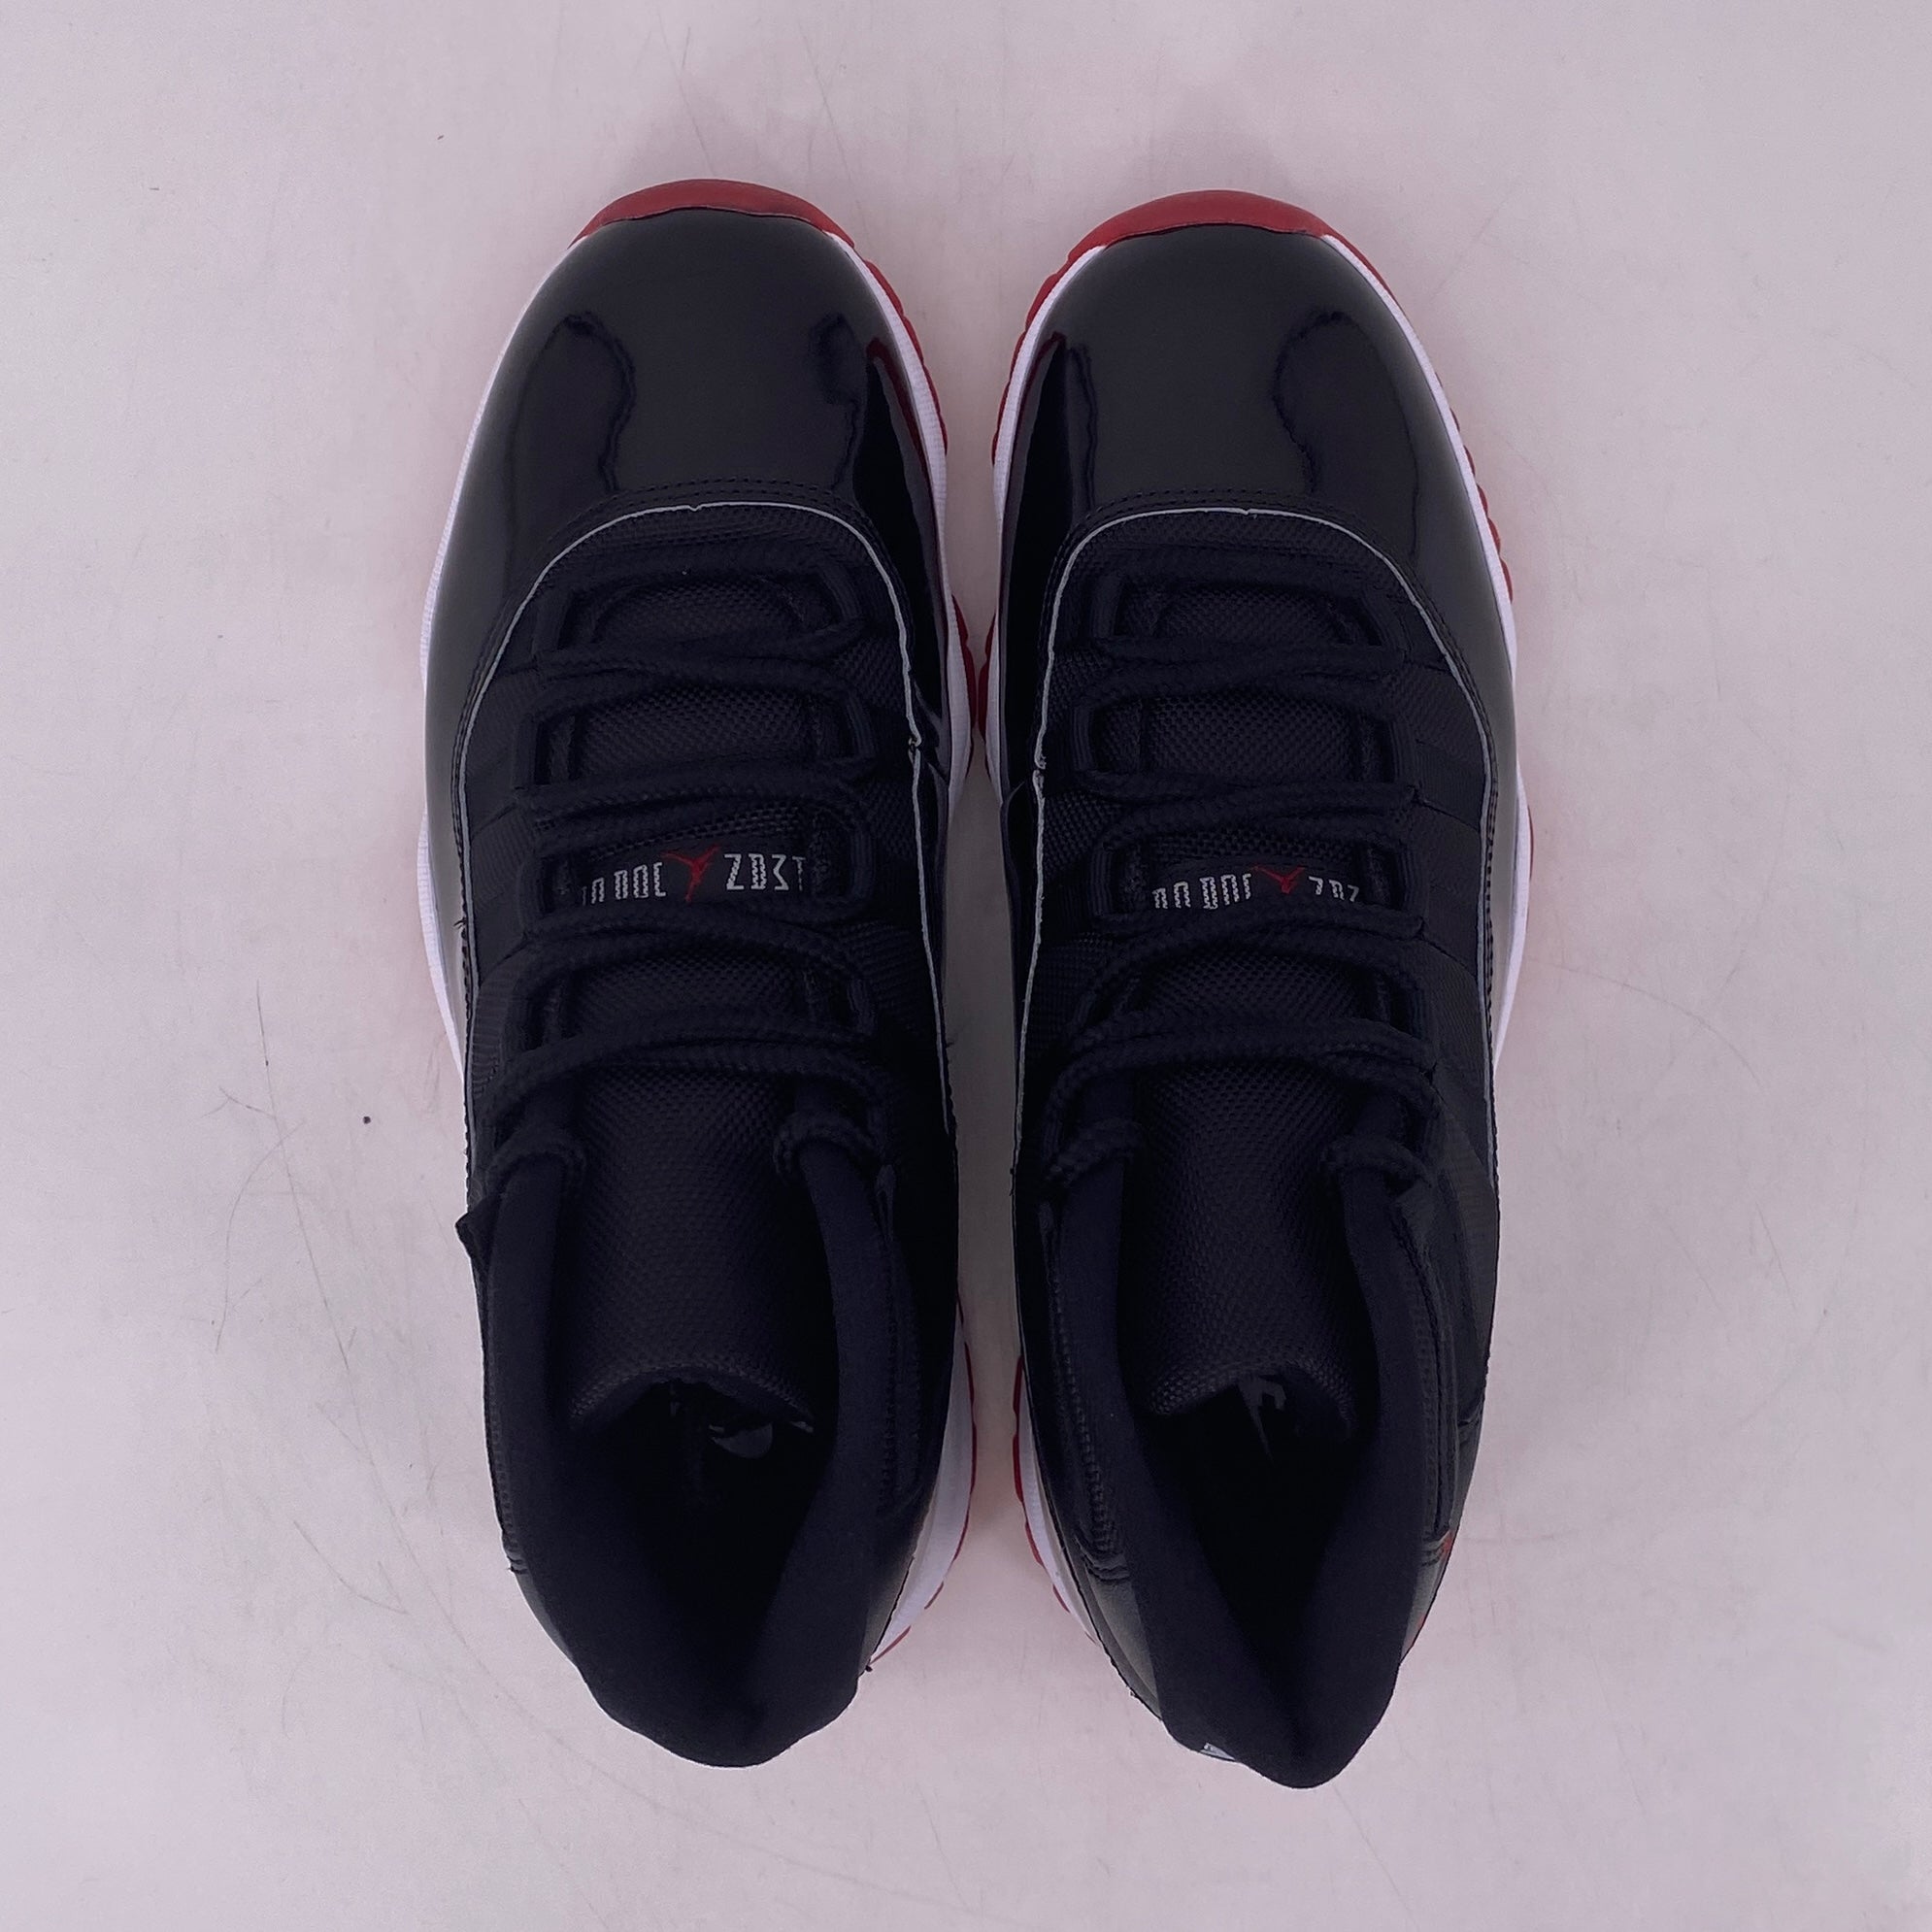 Air Jordan 11 Retro &quot;Bred&quot; 2019 Used Size 8.5